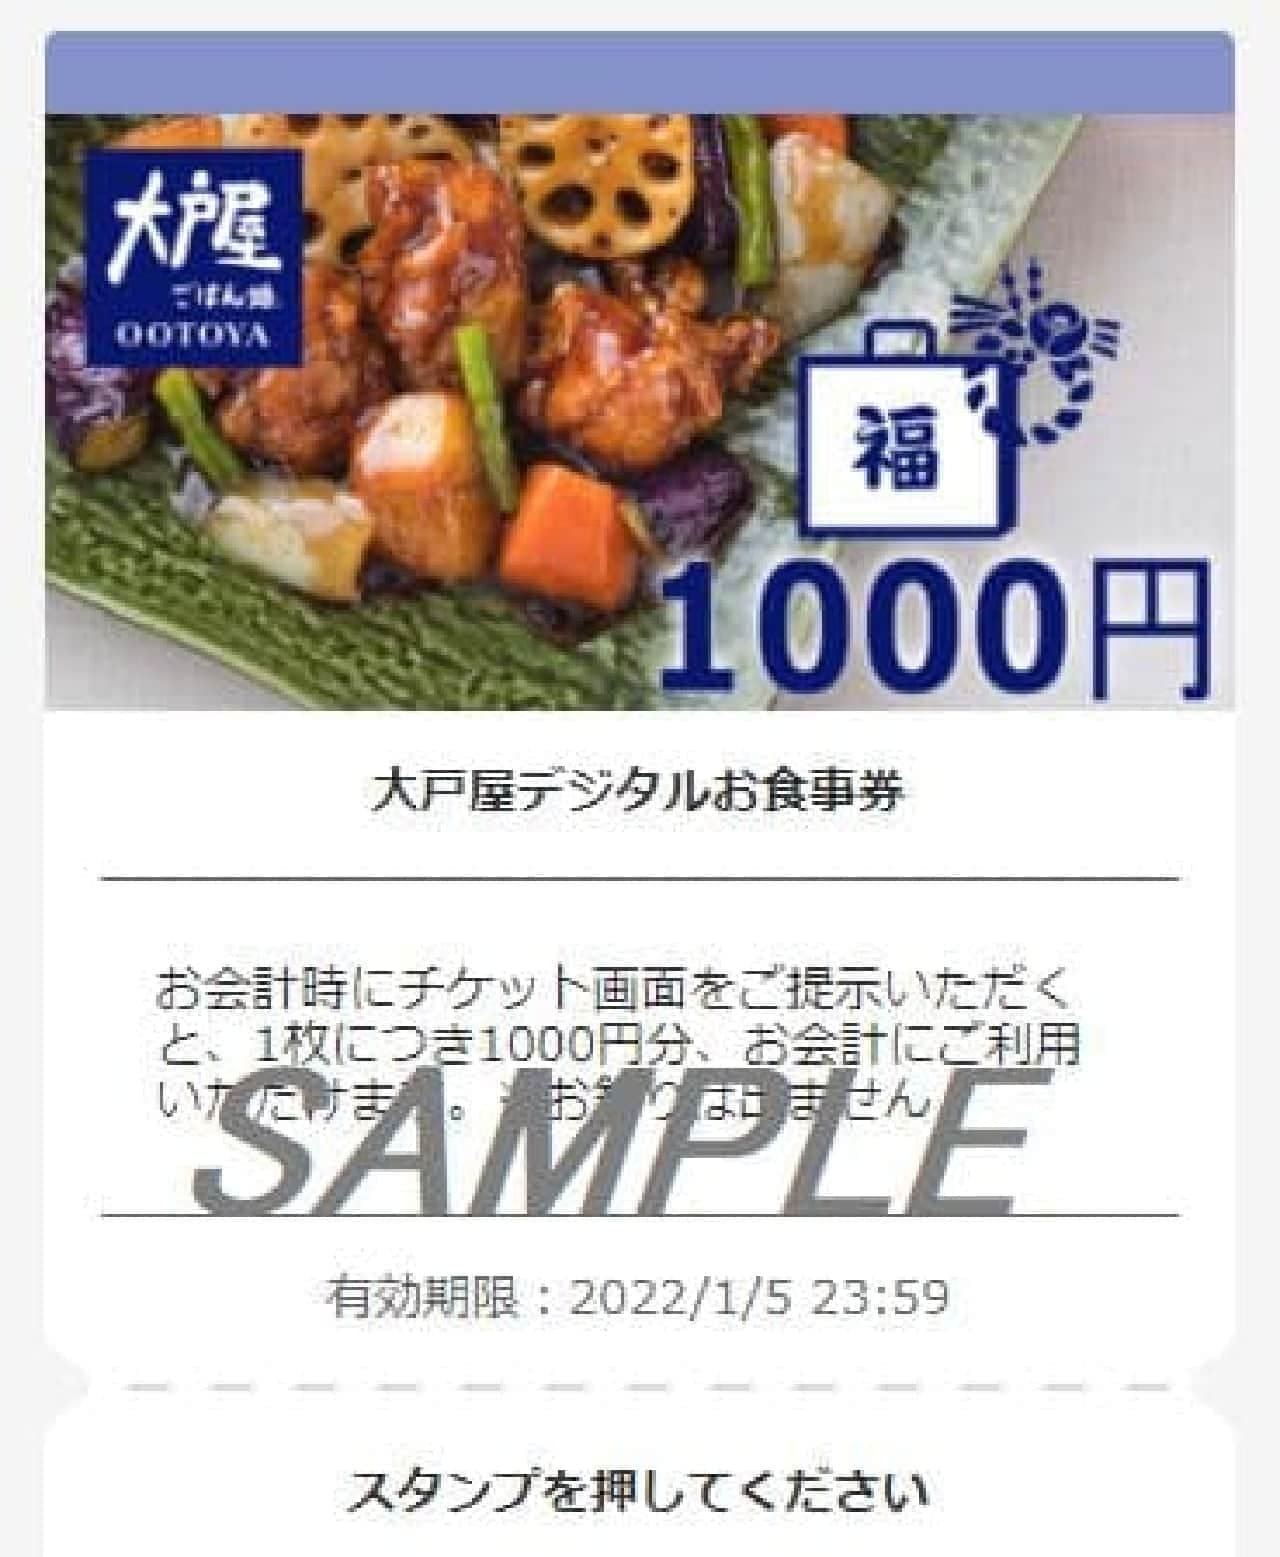 Ootoya "Digital Meal Ticket"